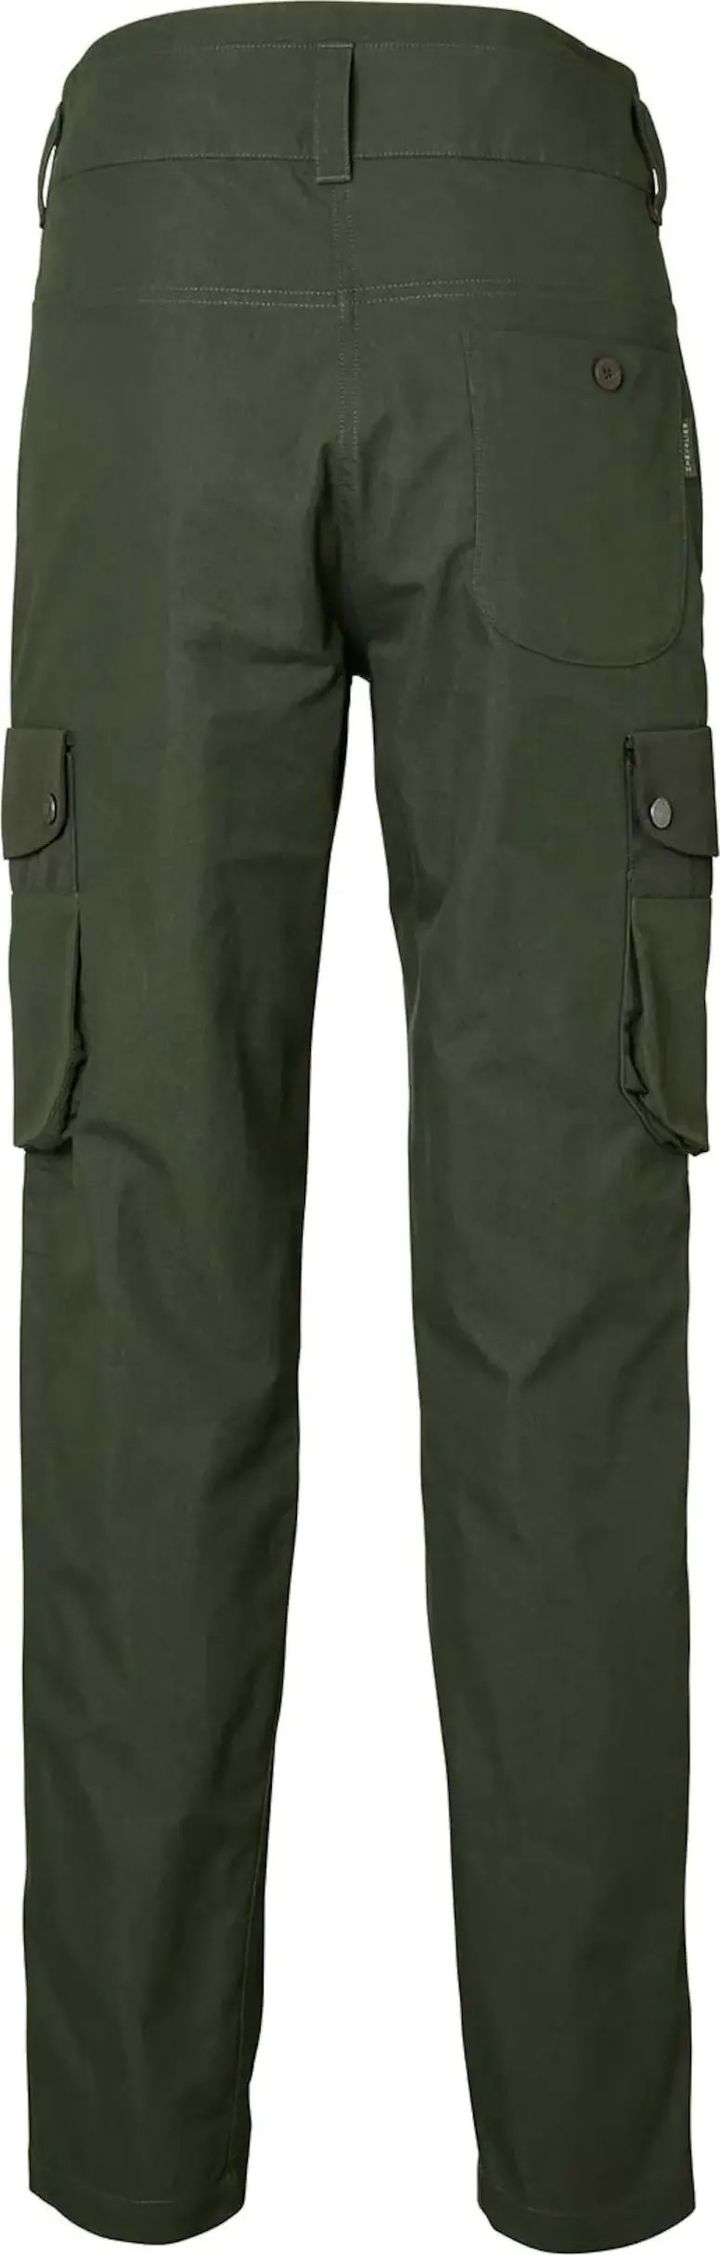 Women's Hale Pants Dark Green Chevalier